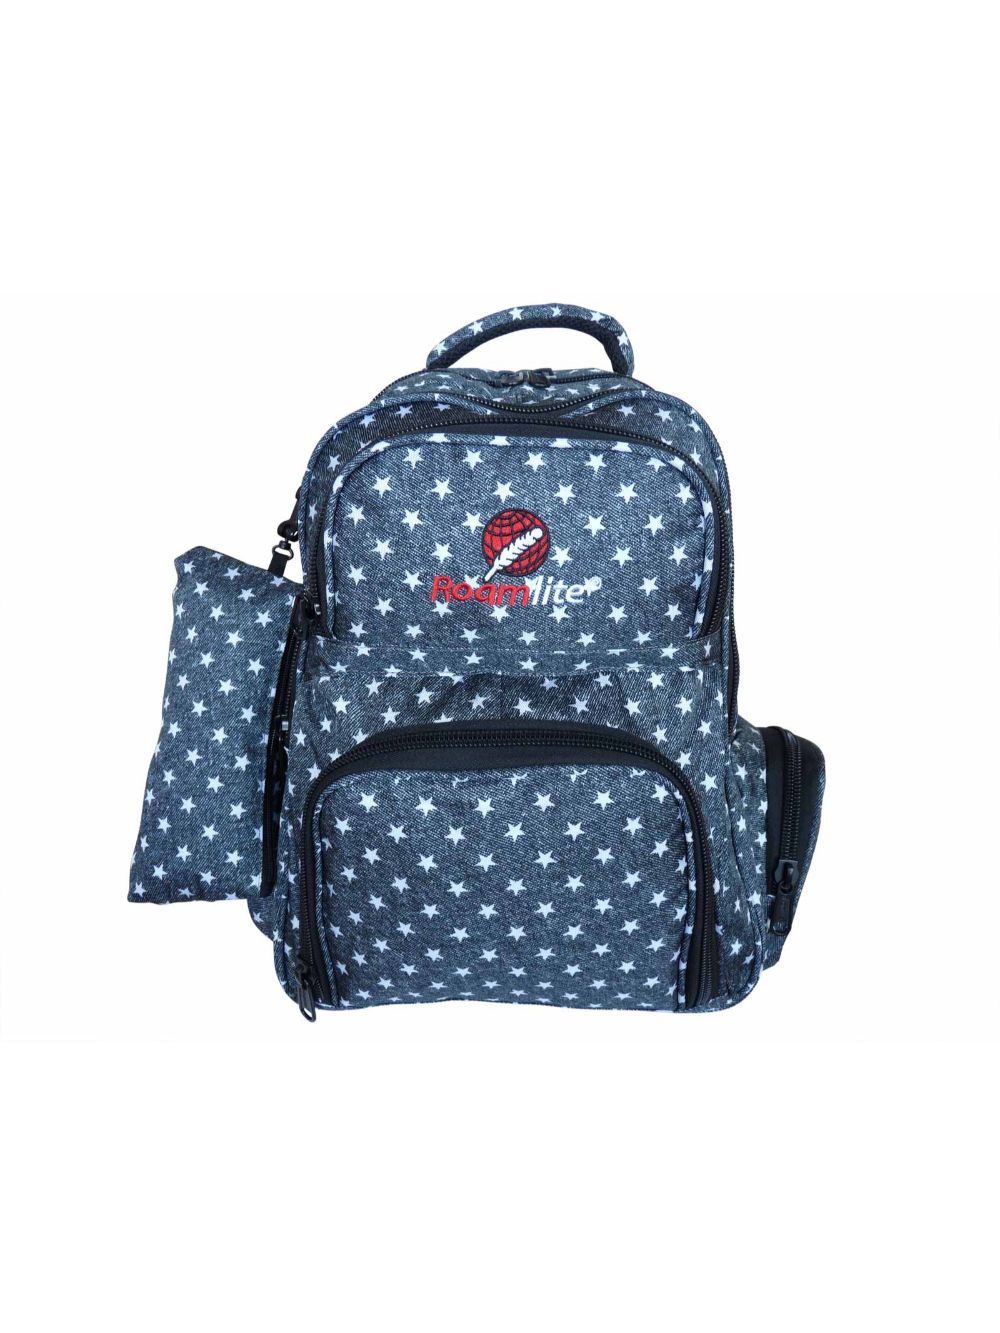 Roamlite Childrens Backpack Black Star pattern RL840  front